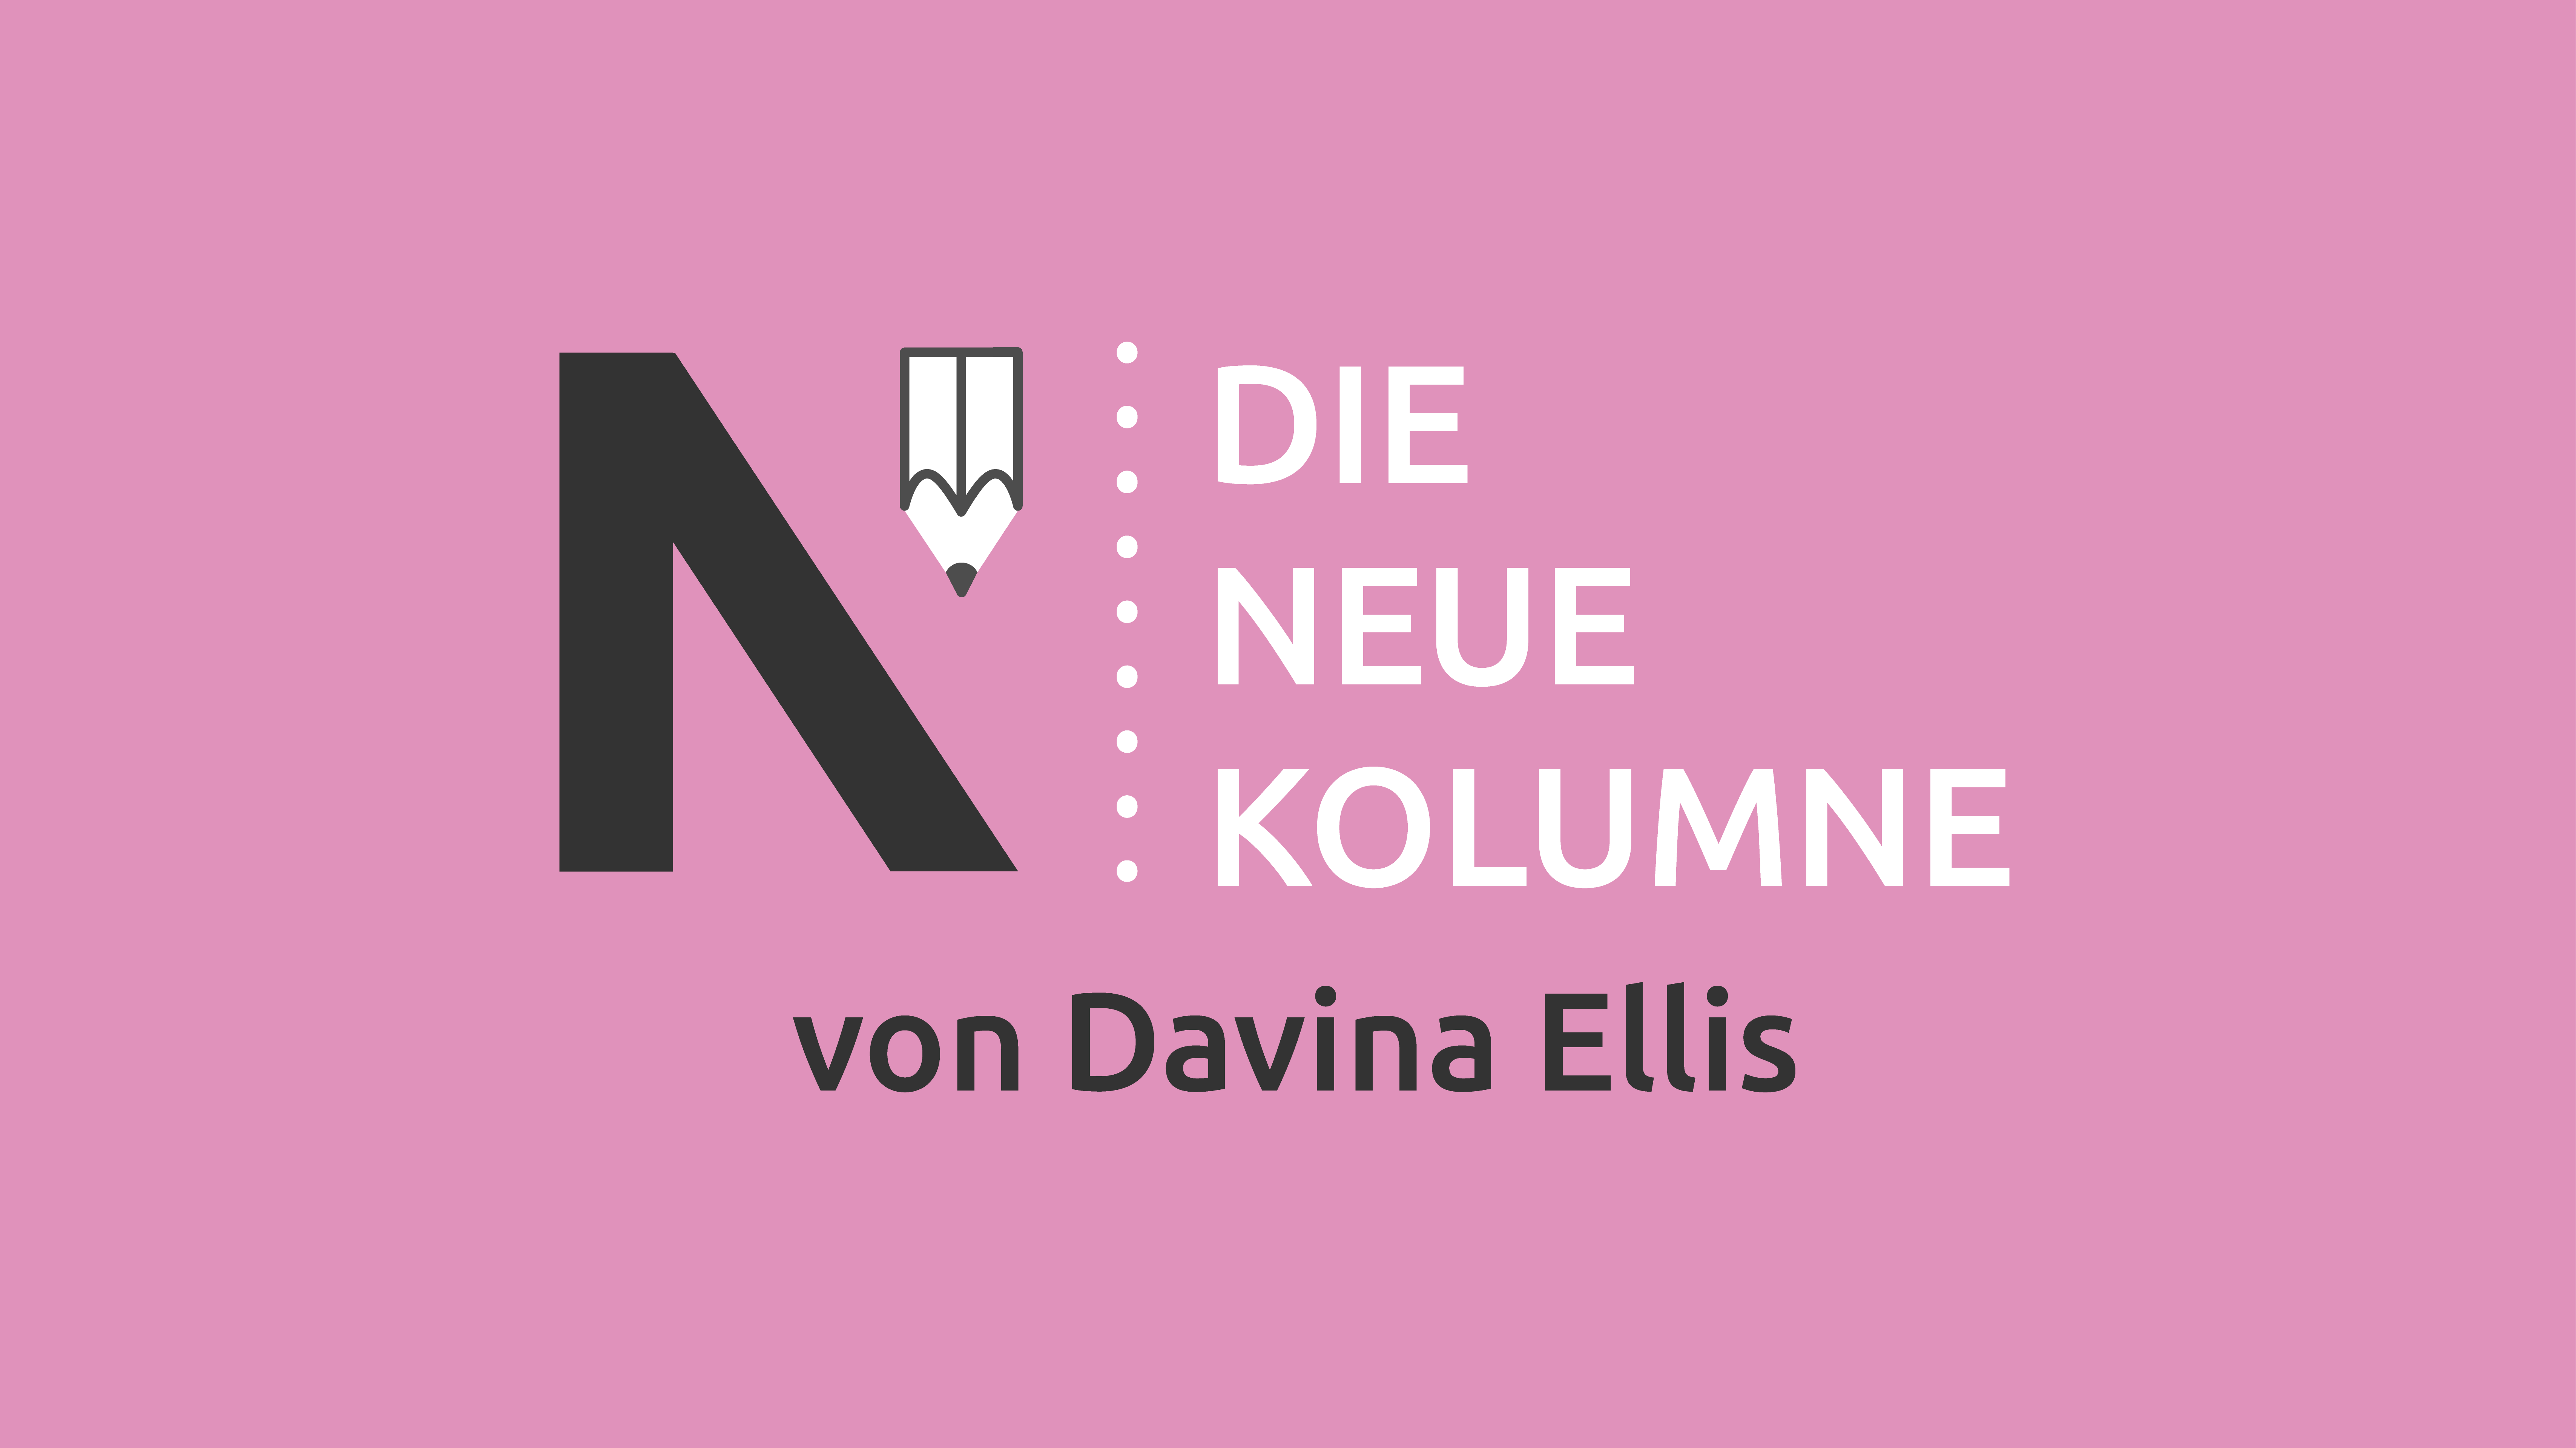 Das Logo von Die Neue Norm auf rosa Grund. Rechts steht: Die Neue Kolumne. Unten steht: Von Davina Ellis.